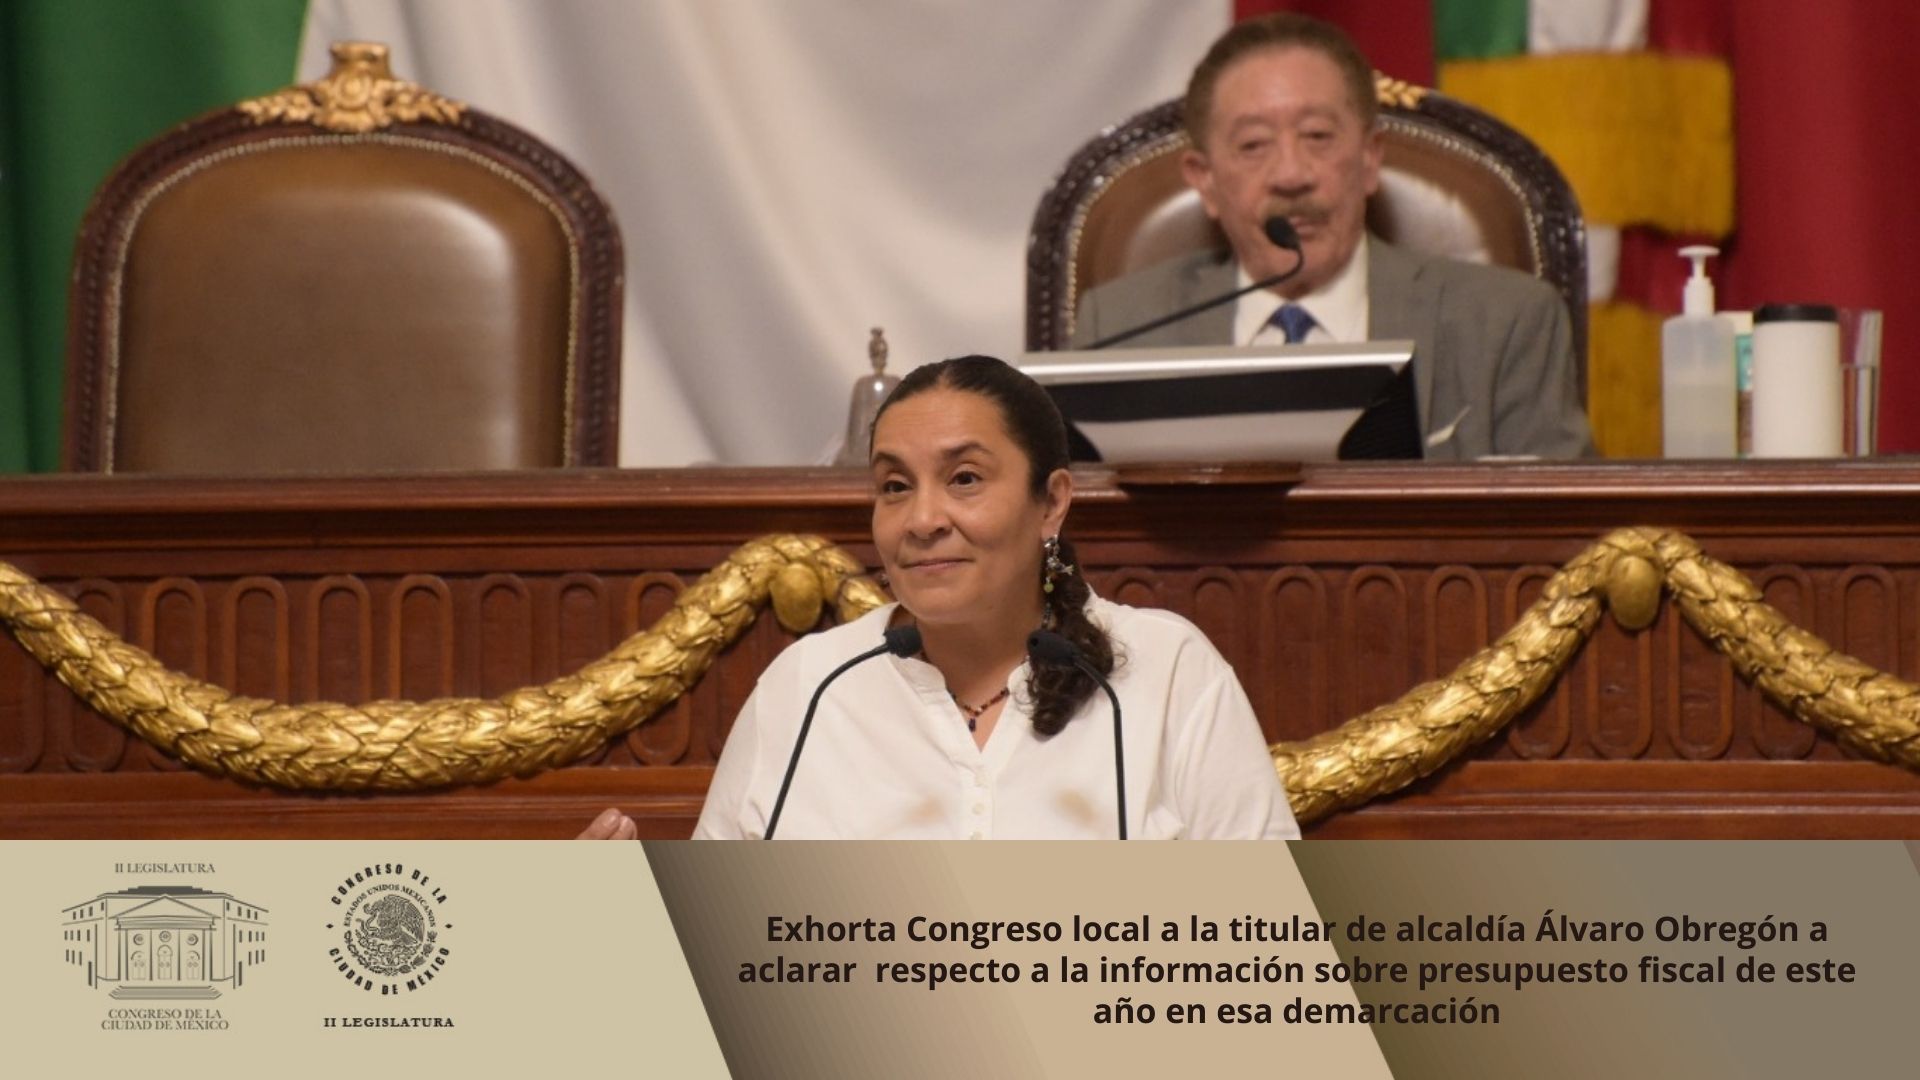 Exhorta Congreso local a la titular de alcaldía Álvaro Obregón a aclarar   respecto a la información sobre presupuesto fiscal de este año en esa demarcación